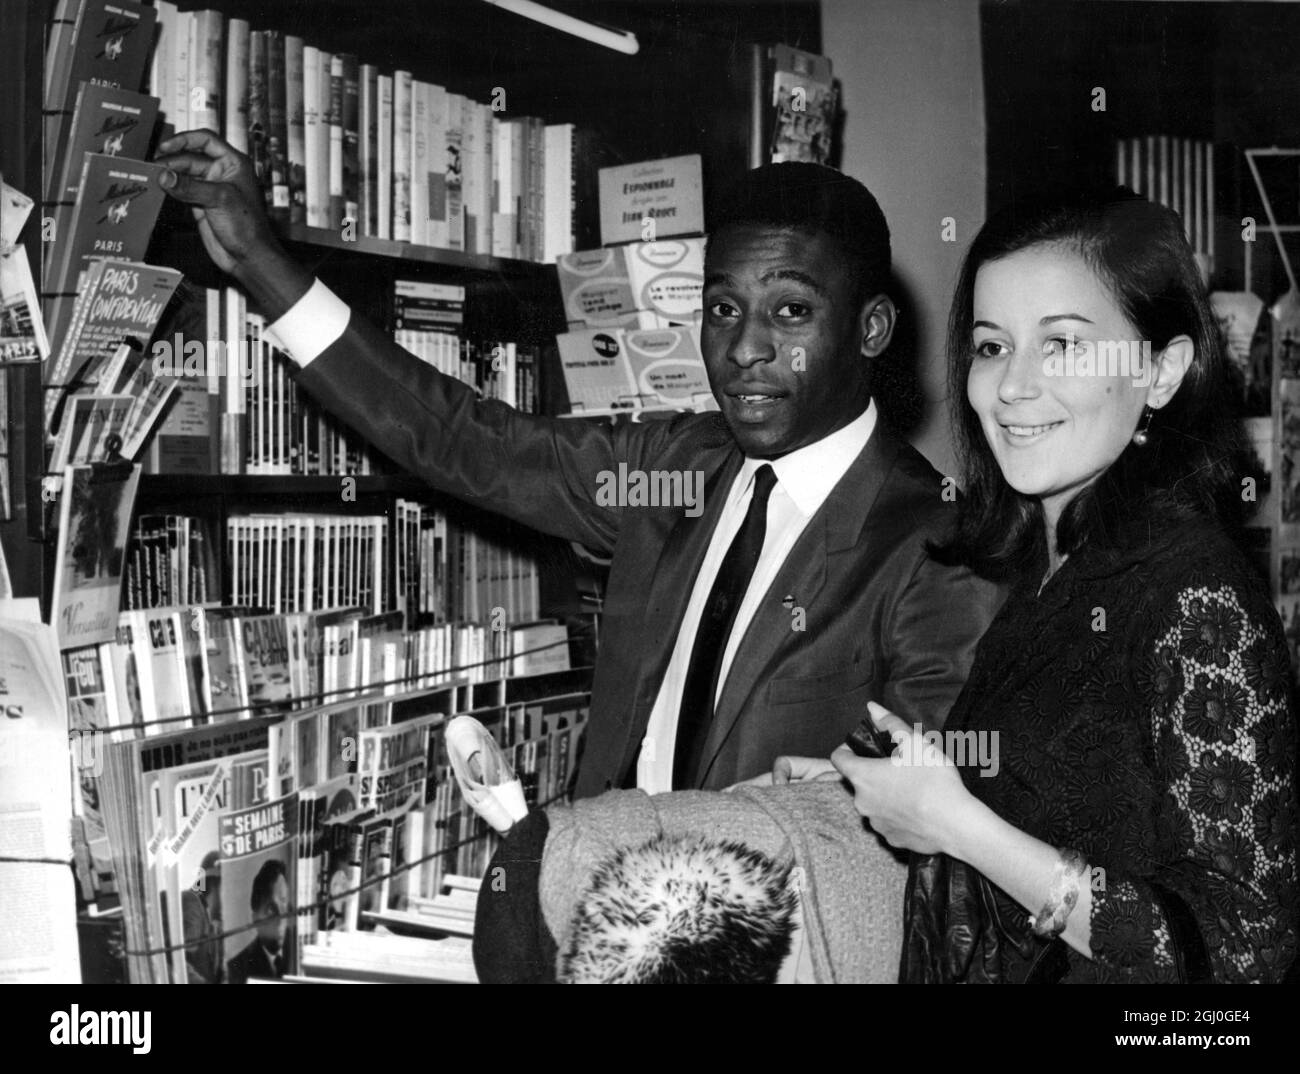 Pele, footballeur brésilien de renommée mondiale, et son épouse Rosemary, qui se sont mariés le mois dernier à Paris, en France. Photographié lors de leur lune de miel en Europe. 17 mars 1966 Banque D'Images